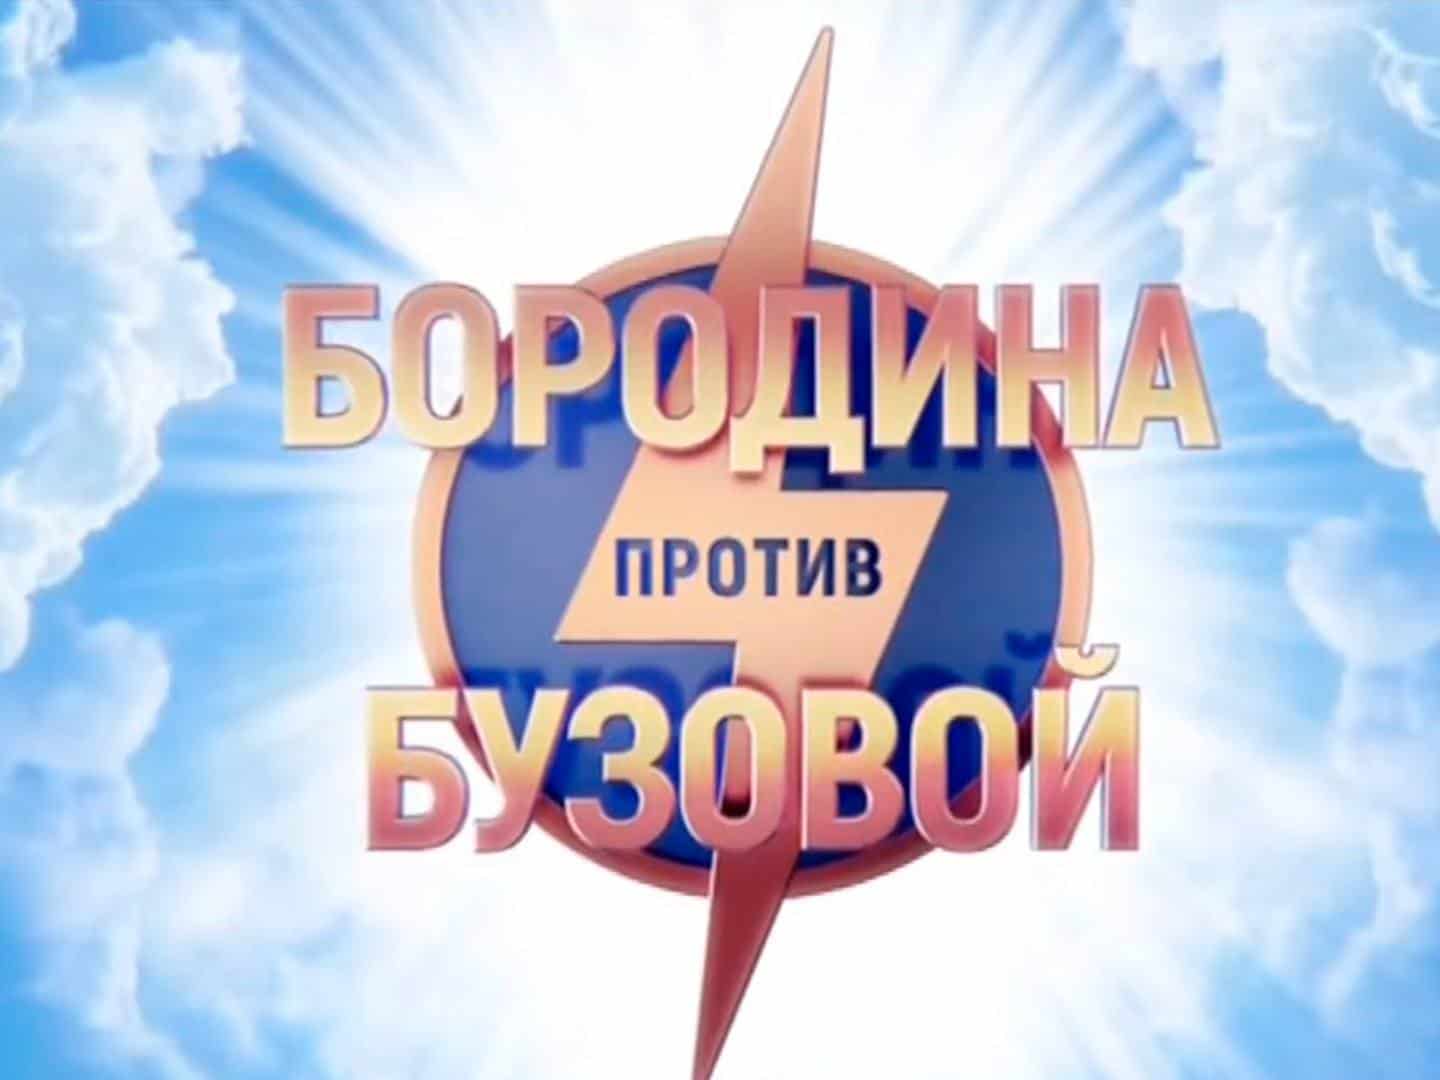 Бородина-против-Бузовой-263-серия